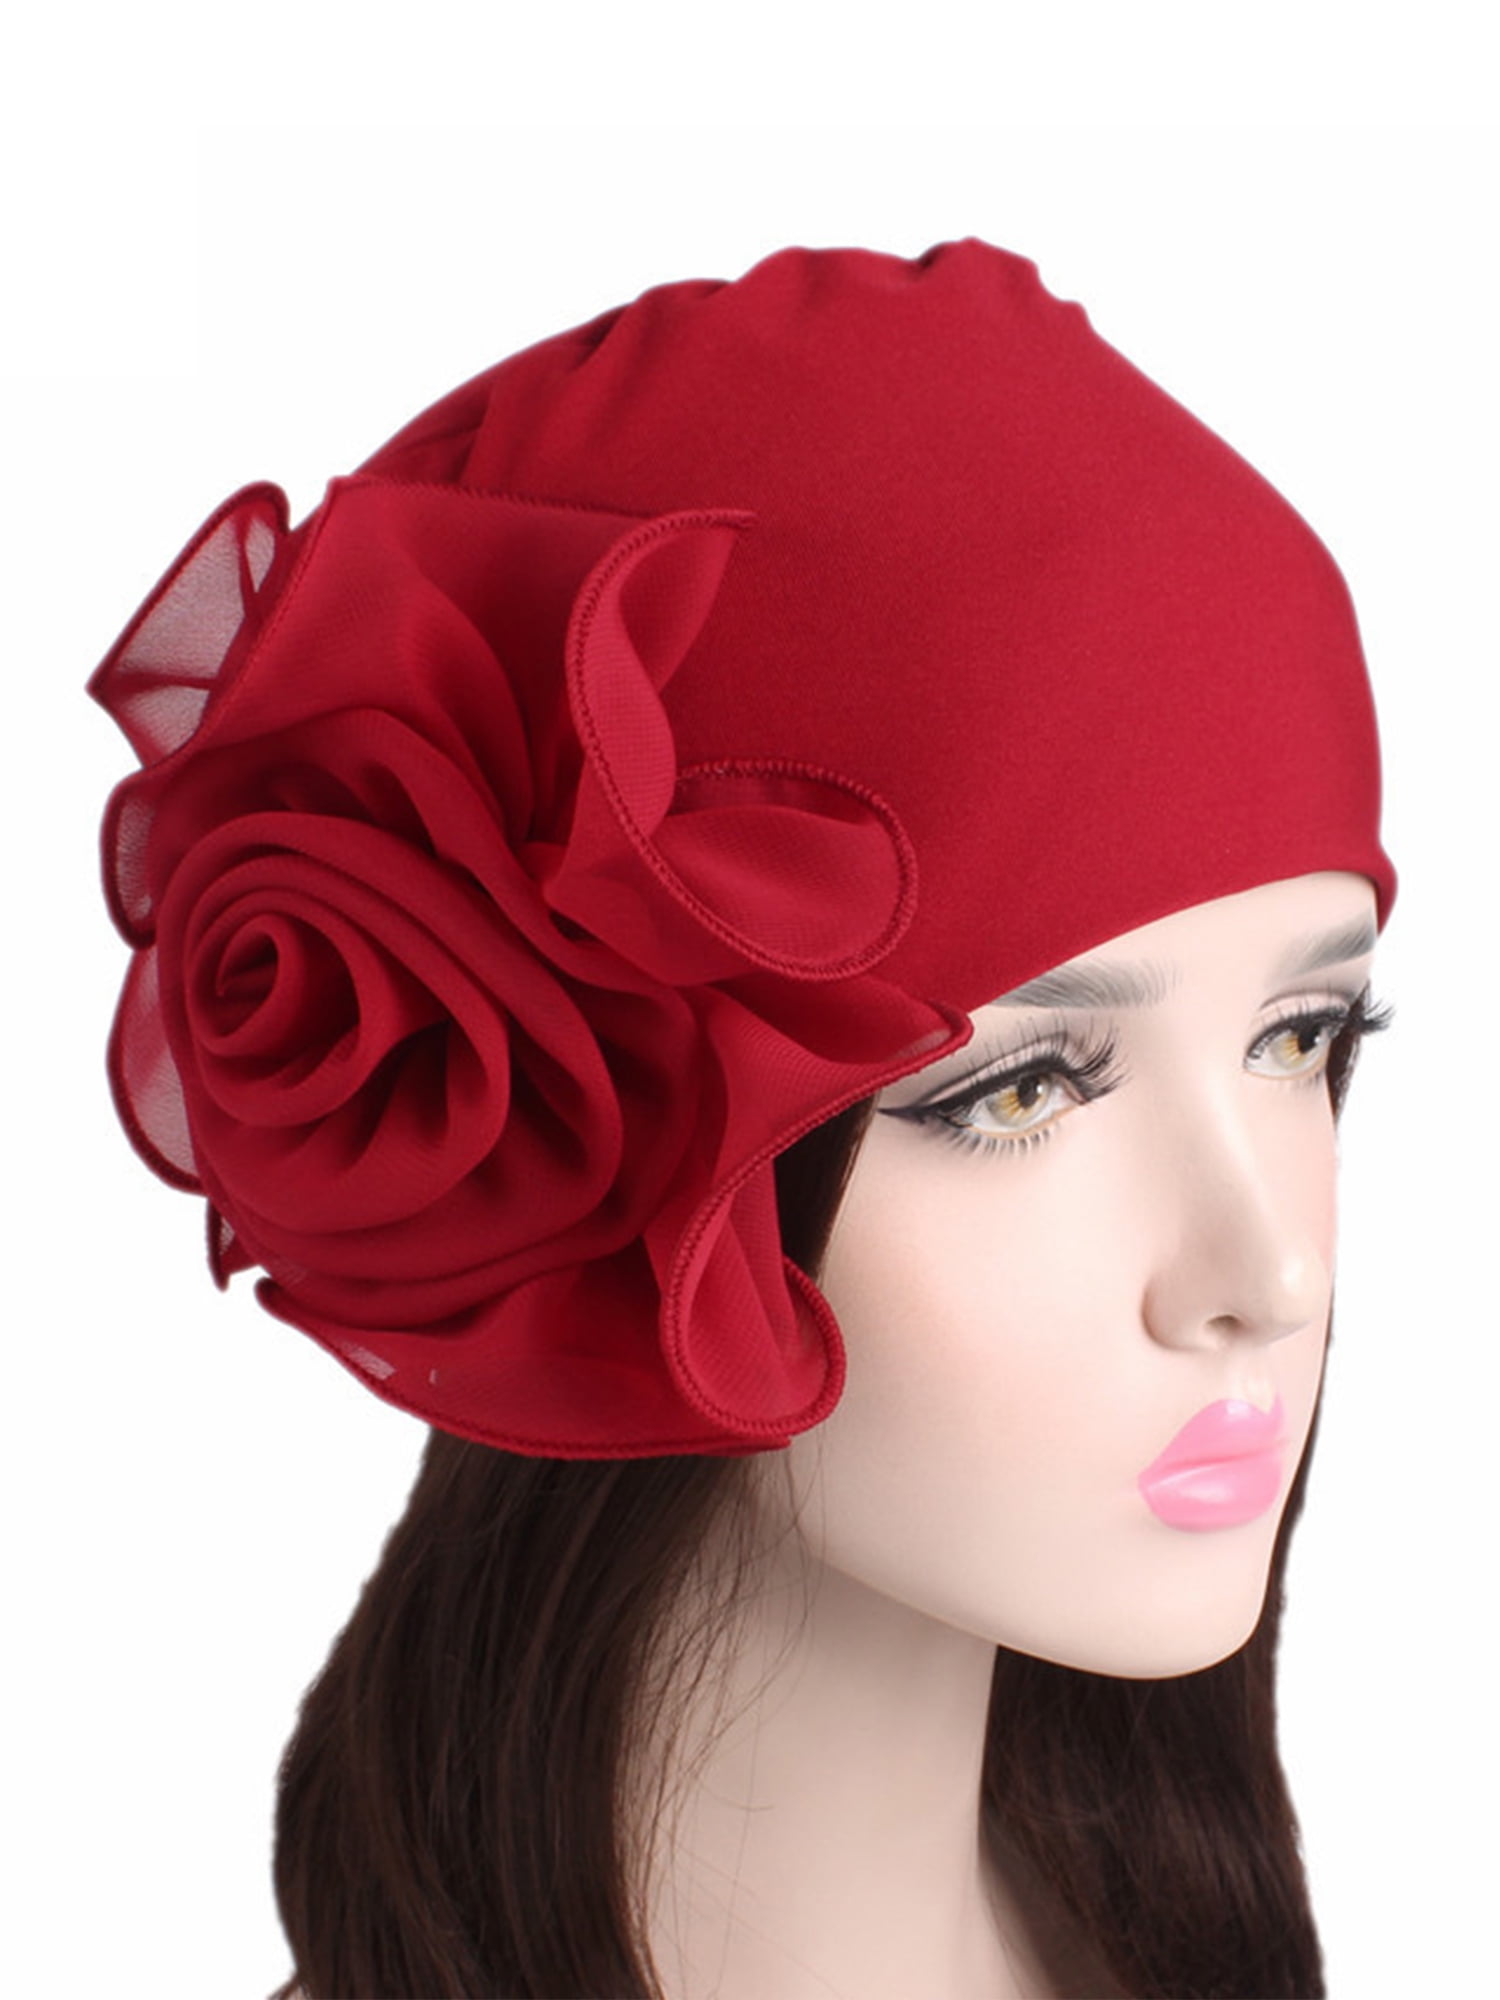 Headwear Headband Red Flowers Head Scarf Wrap Sweatband Sport Headscarves For Men Women